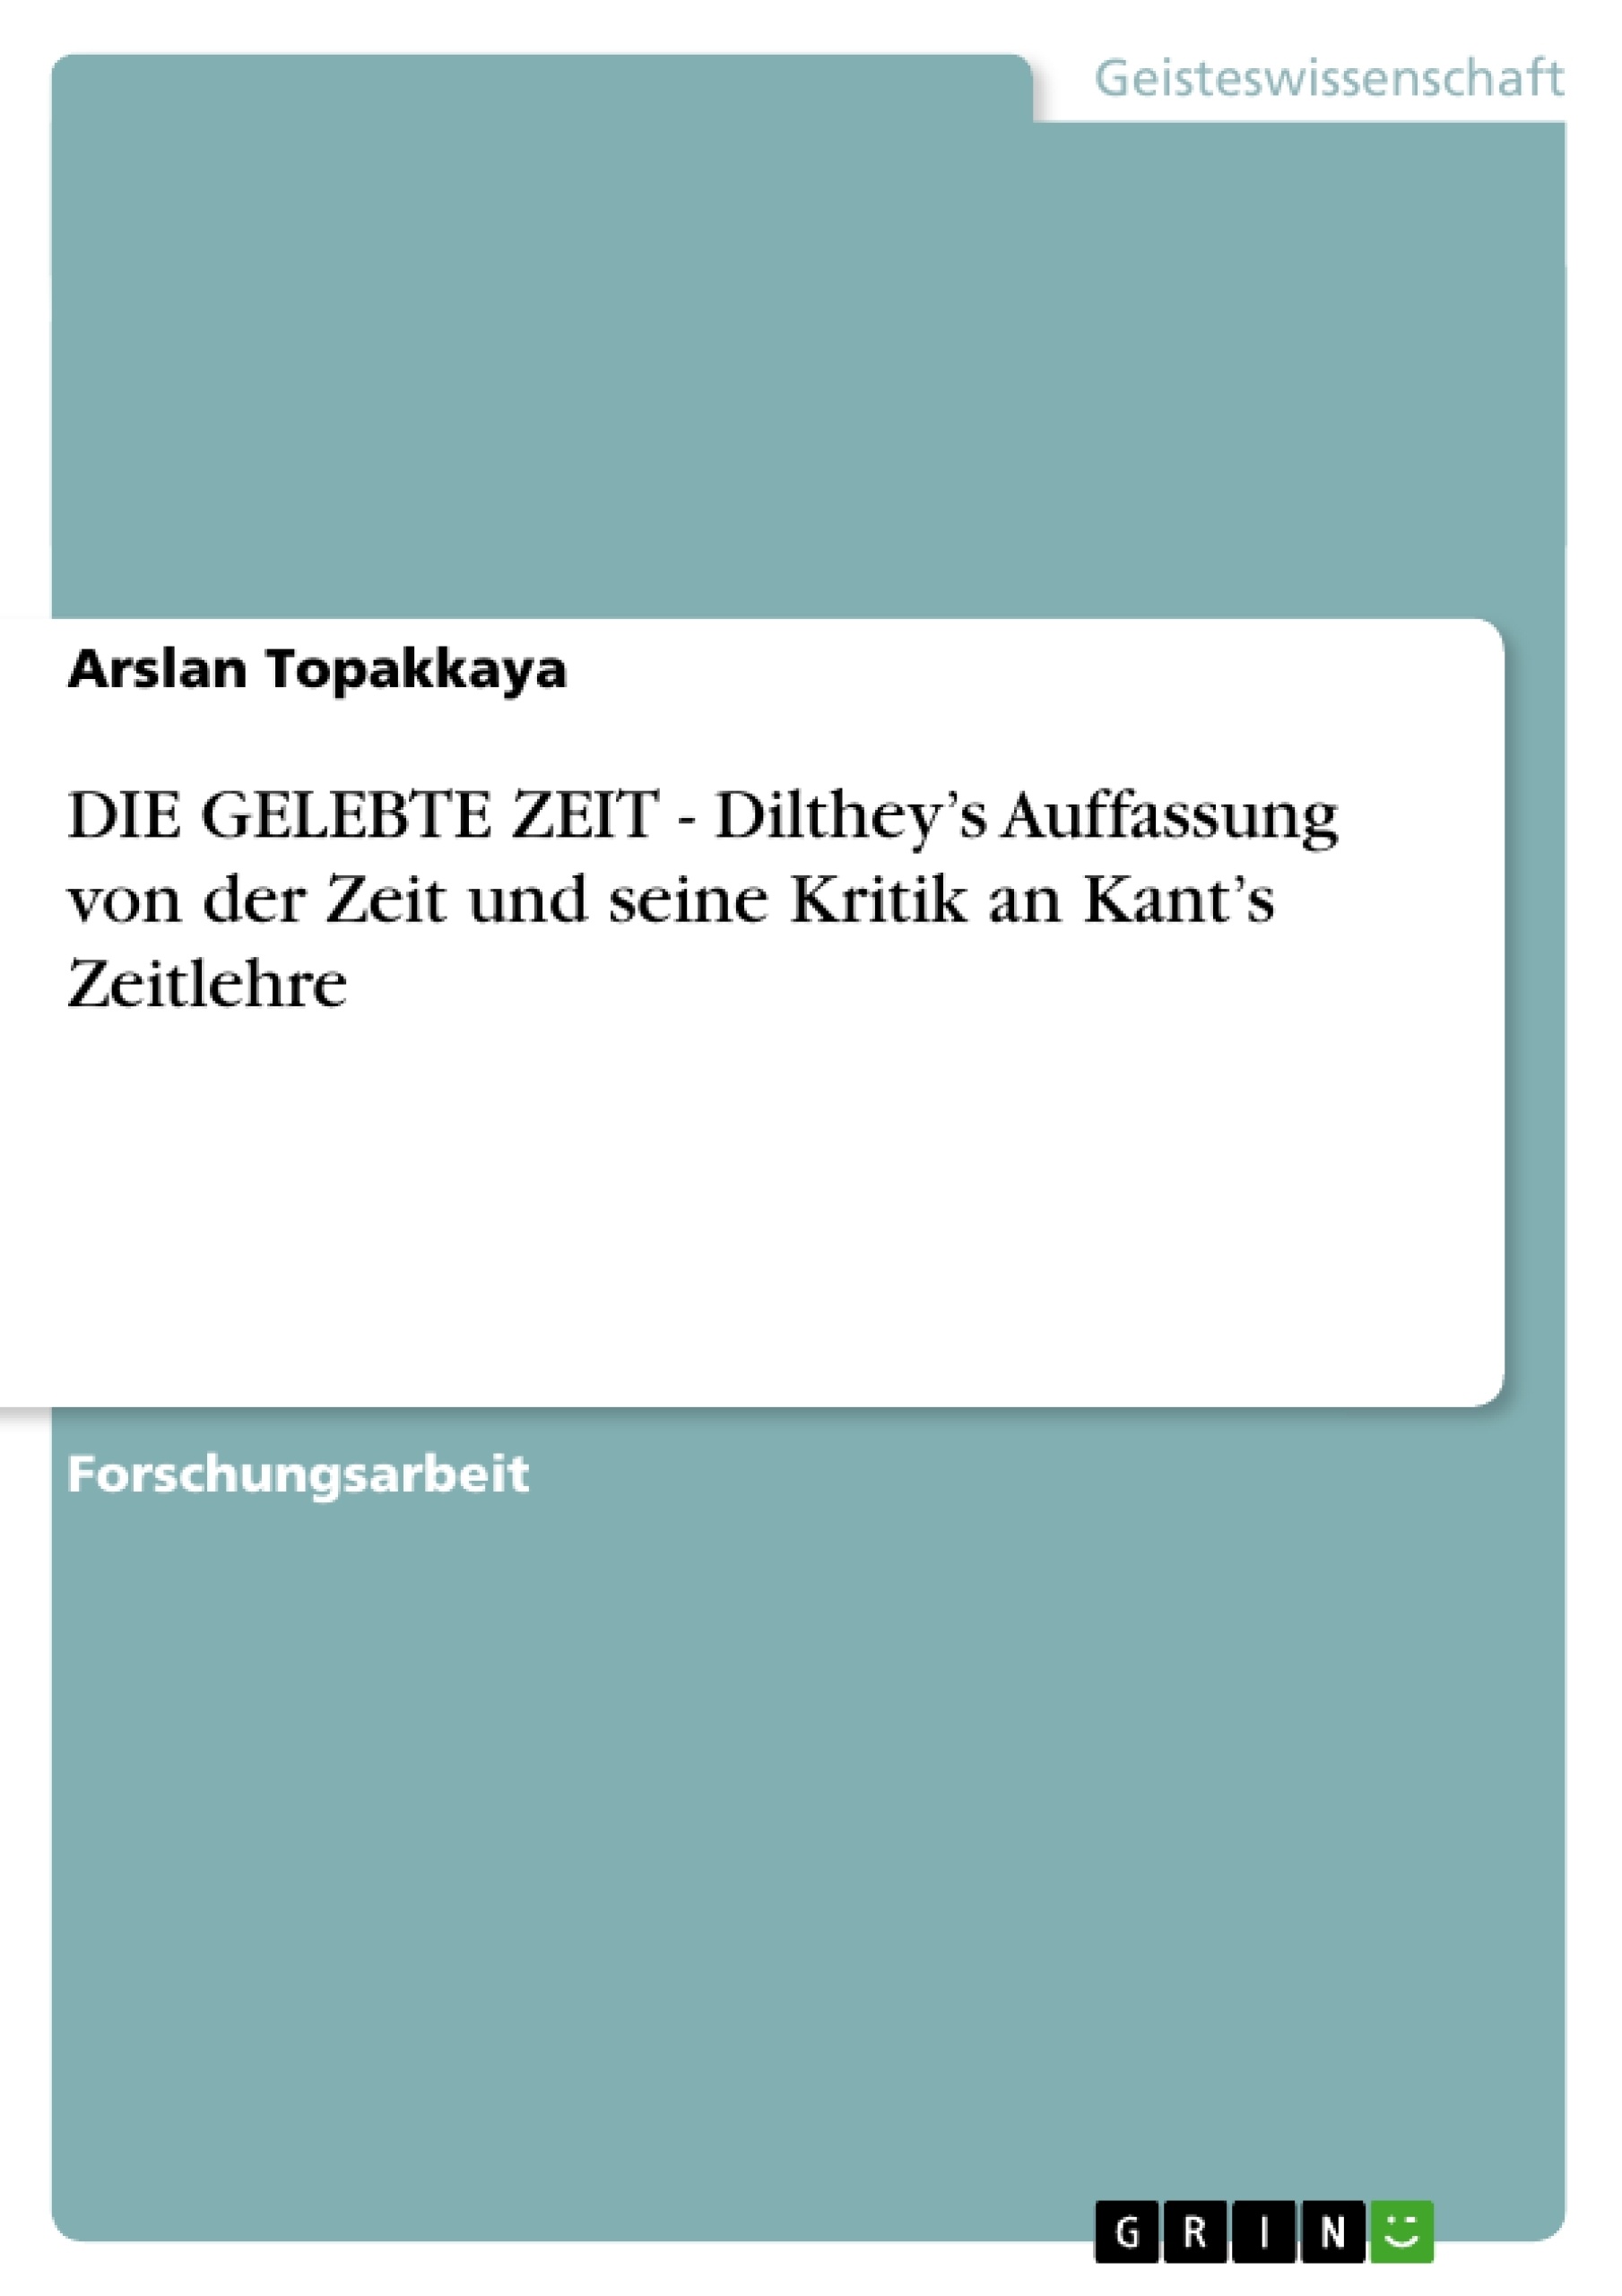 Titel: DIE GELEBTE ZEIT - Dilthey’s Auffassung von der Zeit und seine Kritik an Kant’s Zeitlehre